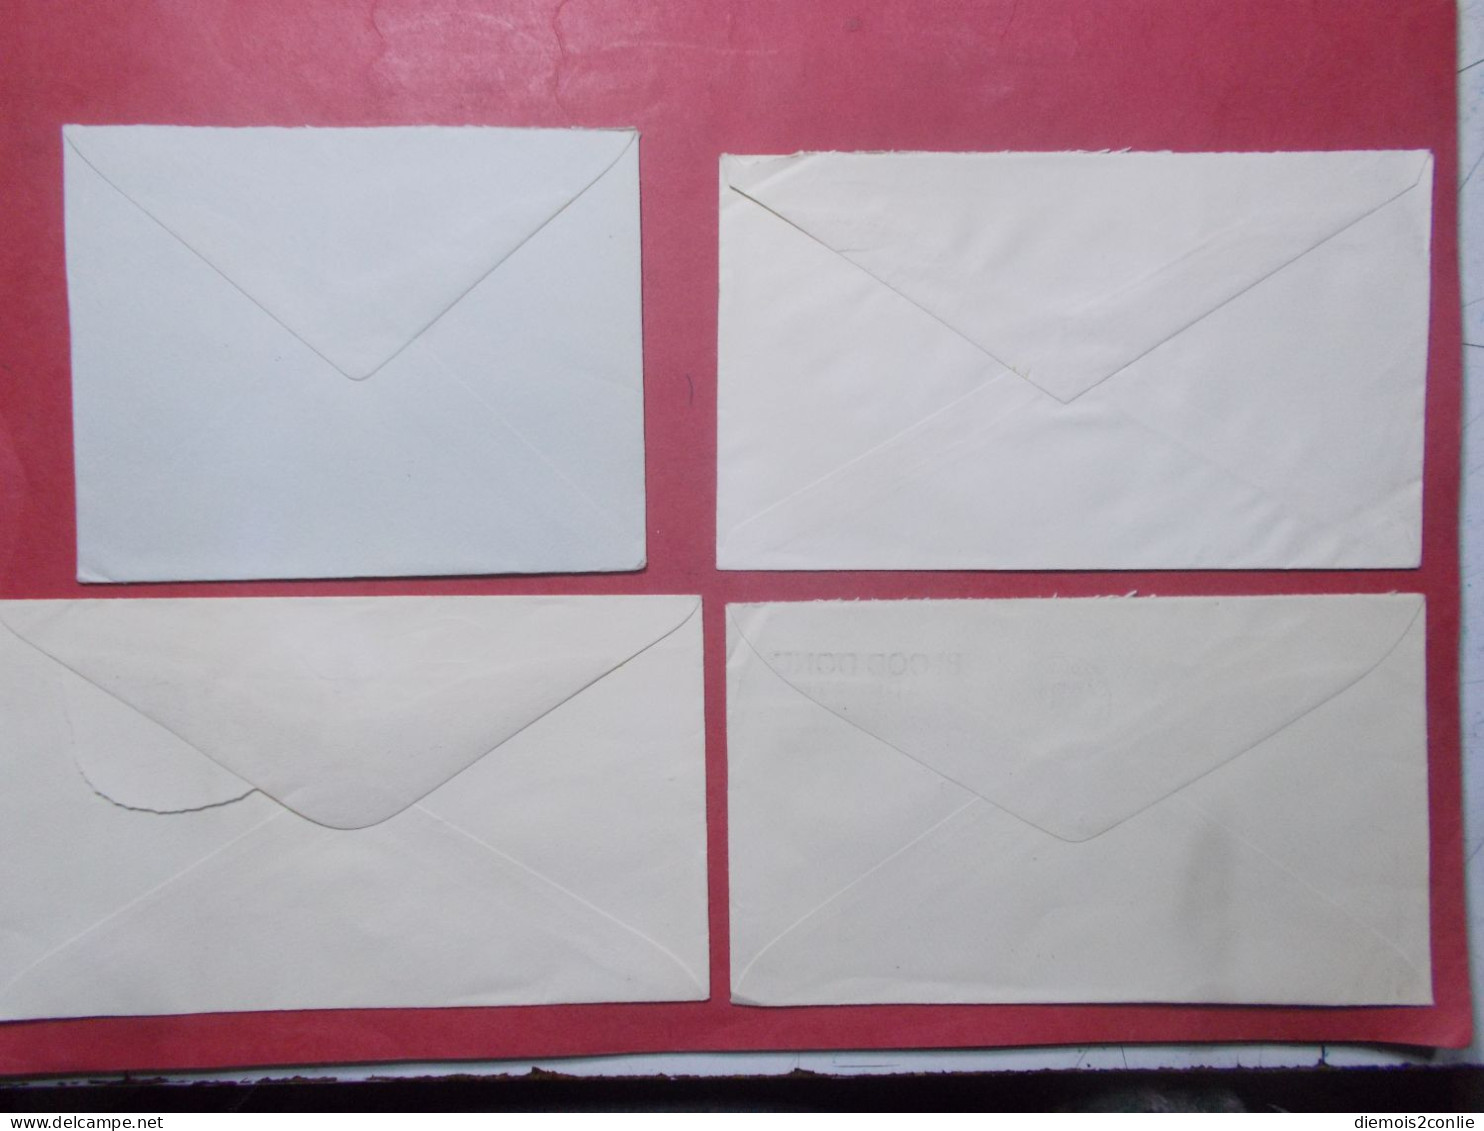 Marcophilie - Lot 4 Lettres Enveloppes Oblitérations Timbres ROYAUME UNI Destination SUISSE (B333) - Postmark Collection